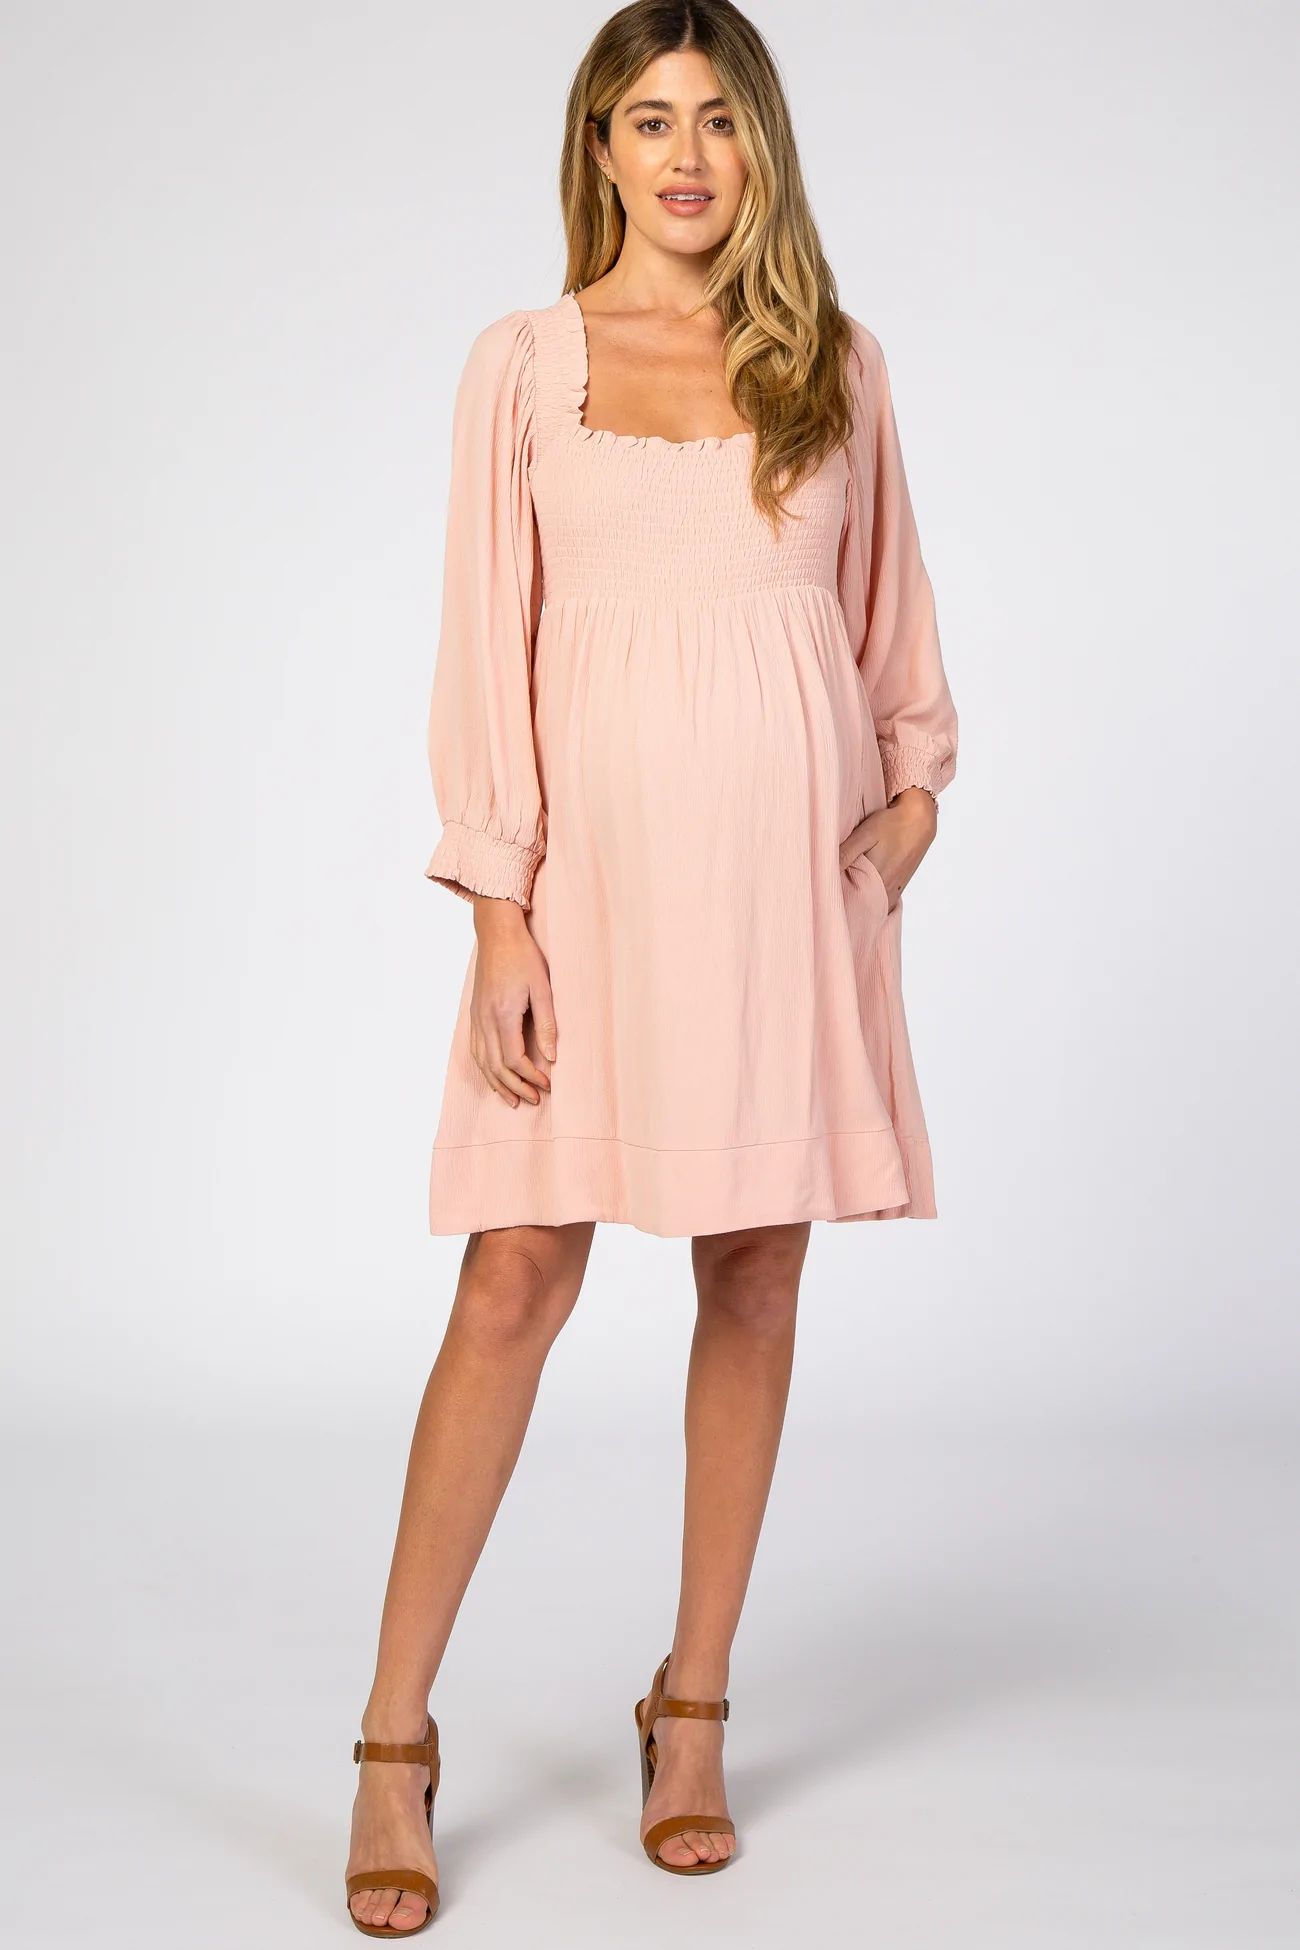 Light Pink Smocked Maternity Mini Dress | PinkBlush Maternity